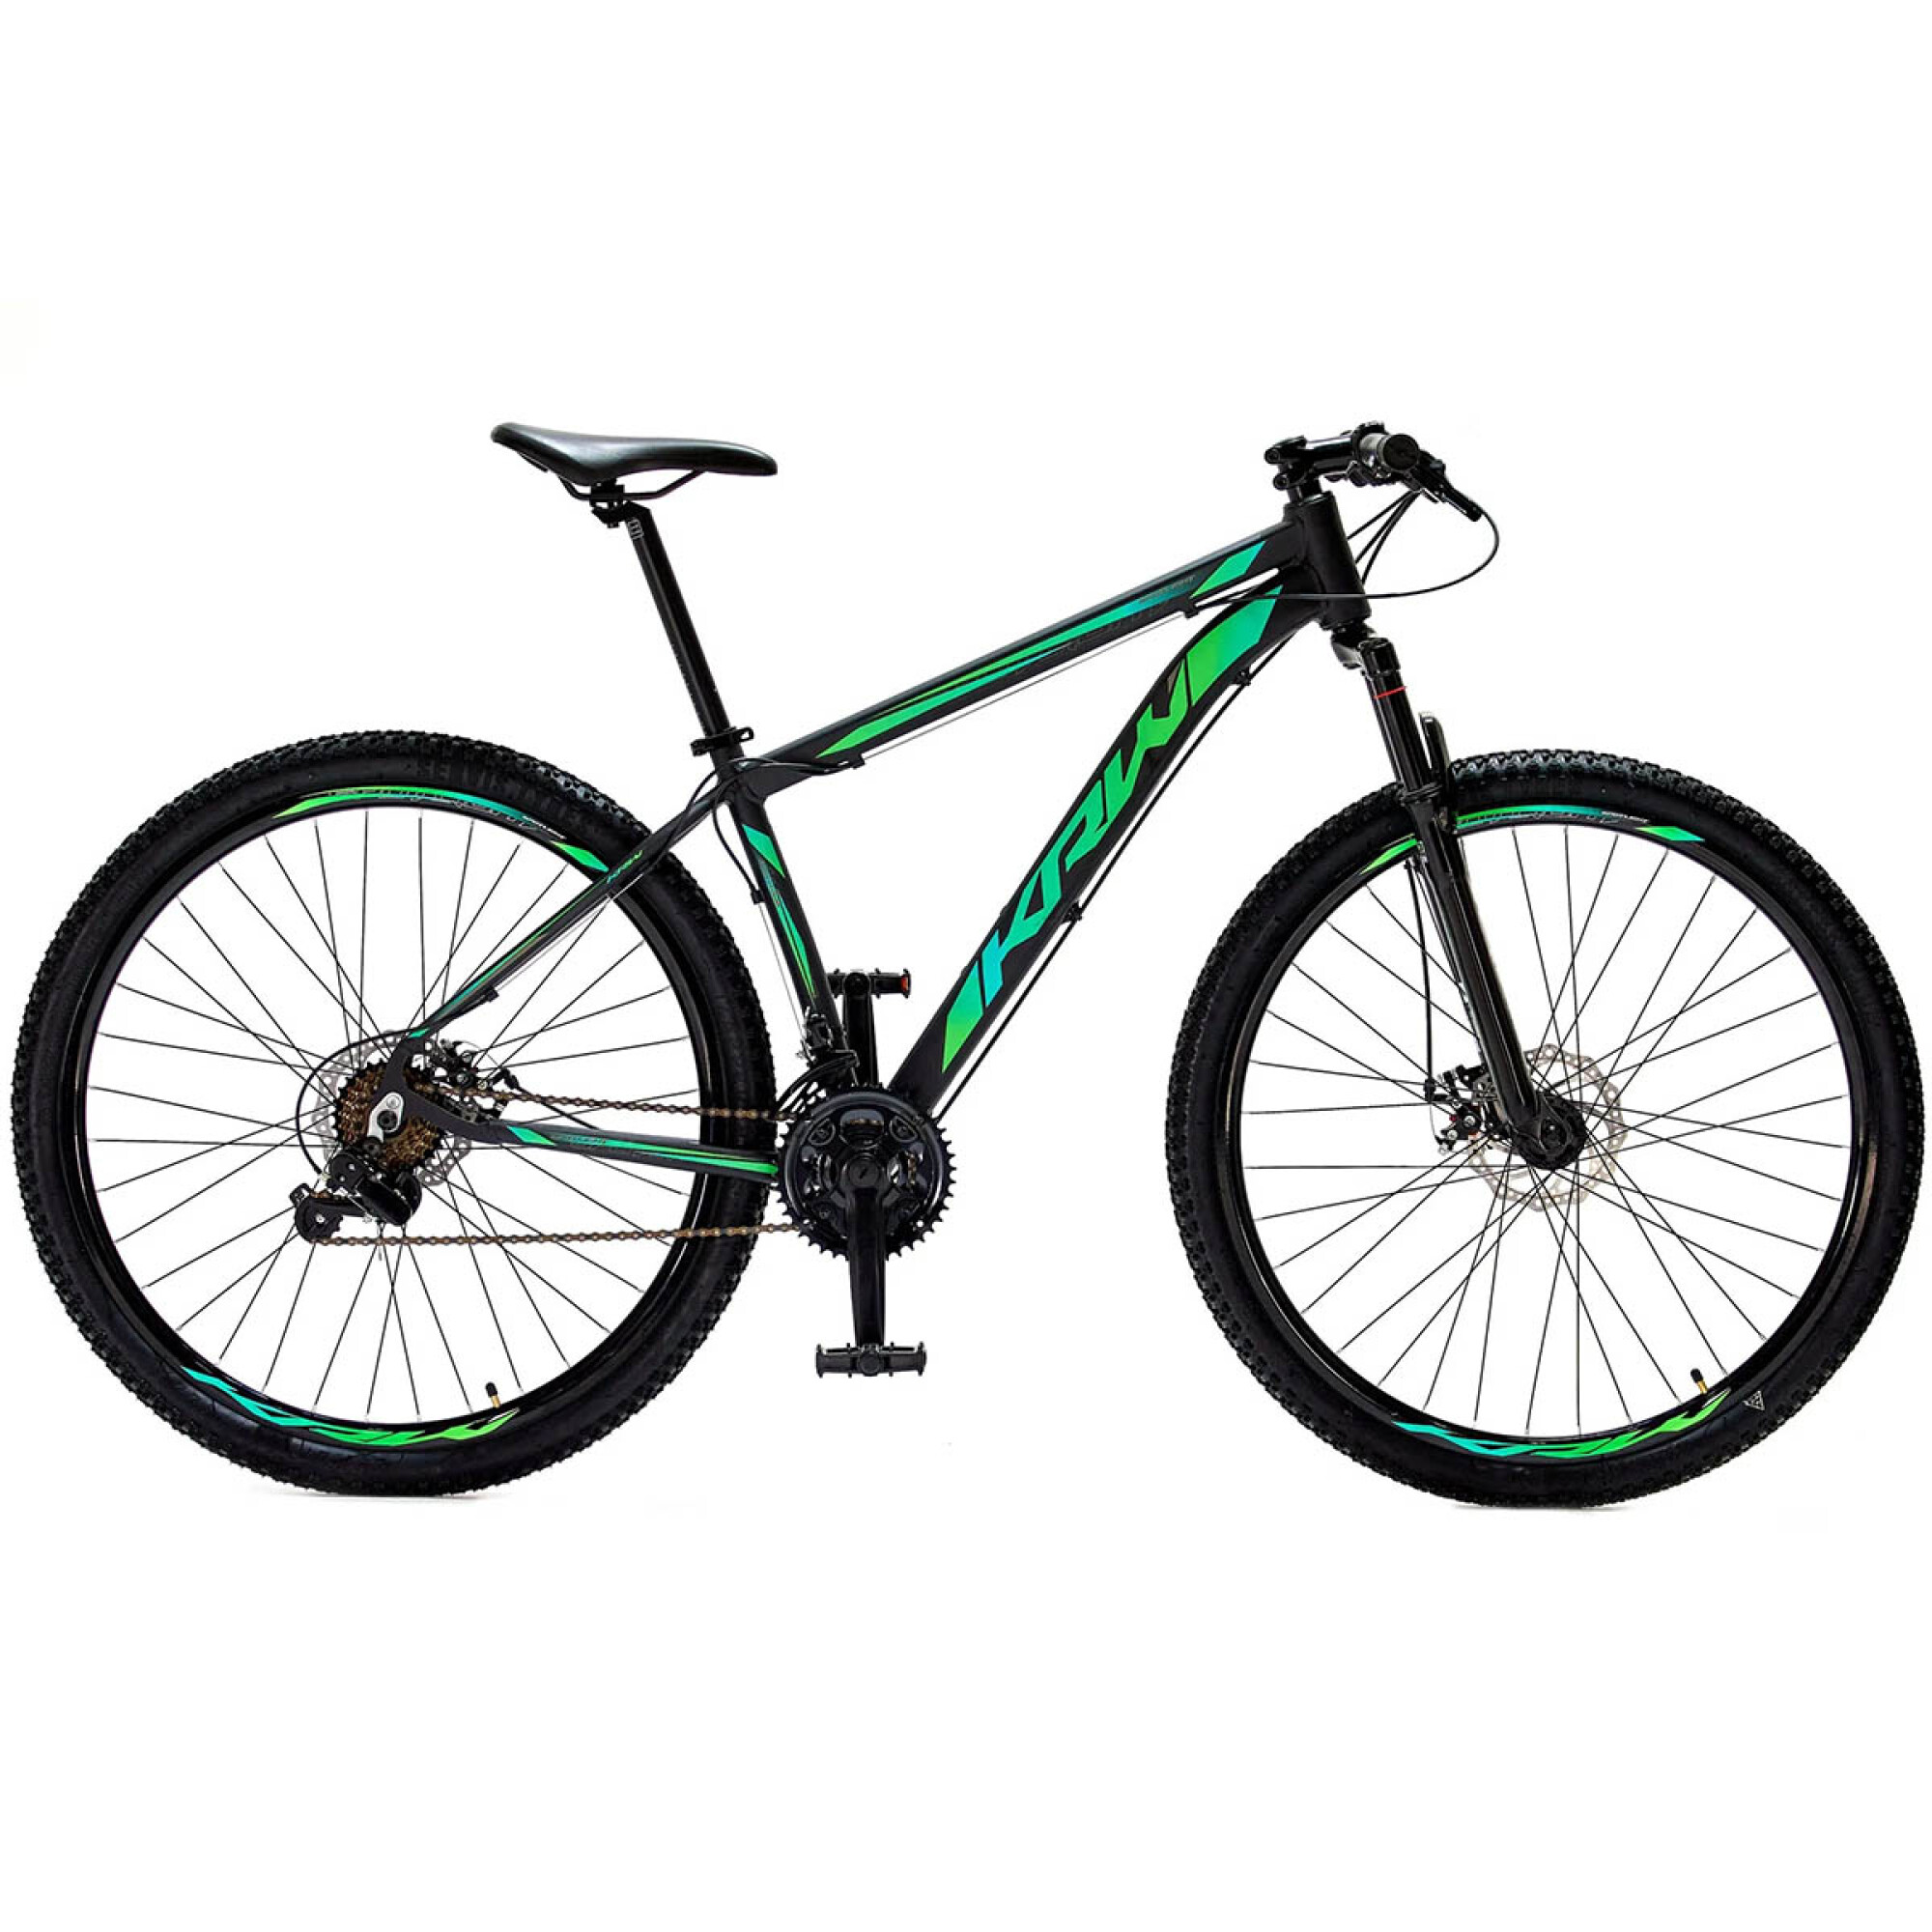  BHDKITZW Bicicleta de montaña 3 Rodamientos Pedales MTB  Bicicletas Sellado Rodamiento Aleación de Aluminio Pedales Accesorios  Bicicleta Y05 Verde Negro : Deportes y Actividades al Aire Libre